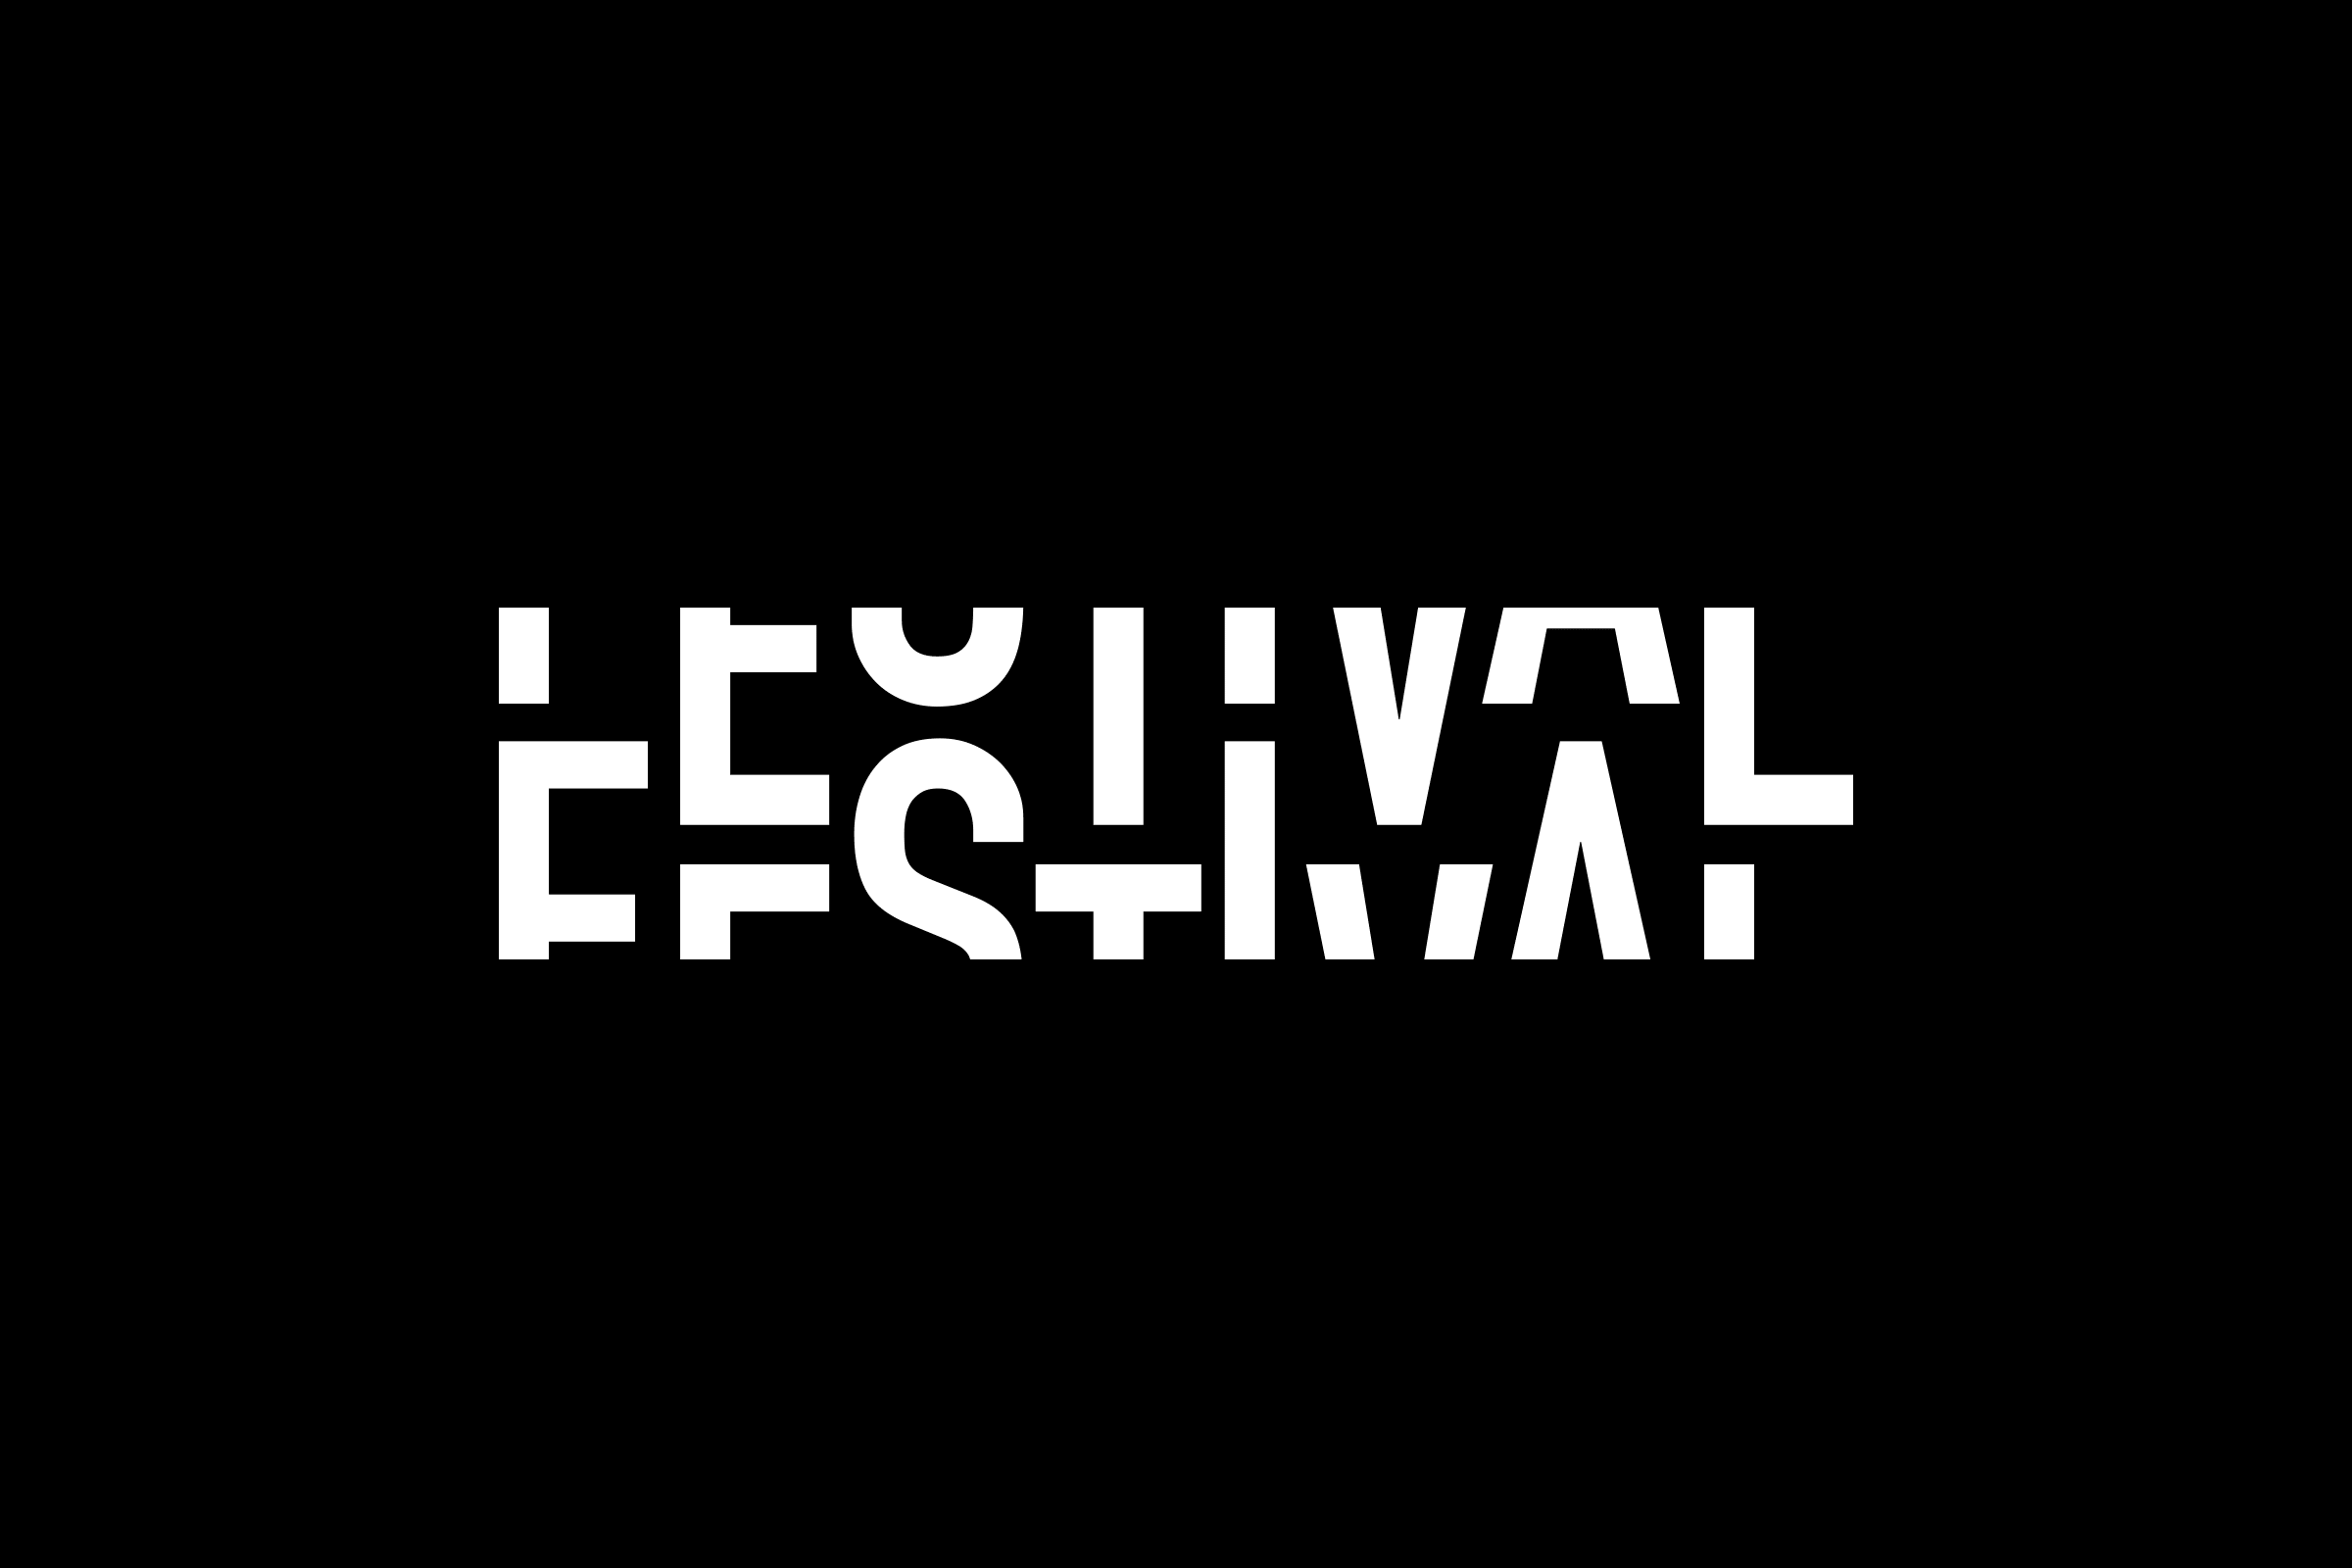 Mot Festival animé avec un jeu typographique